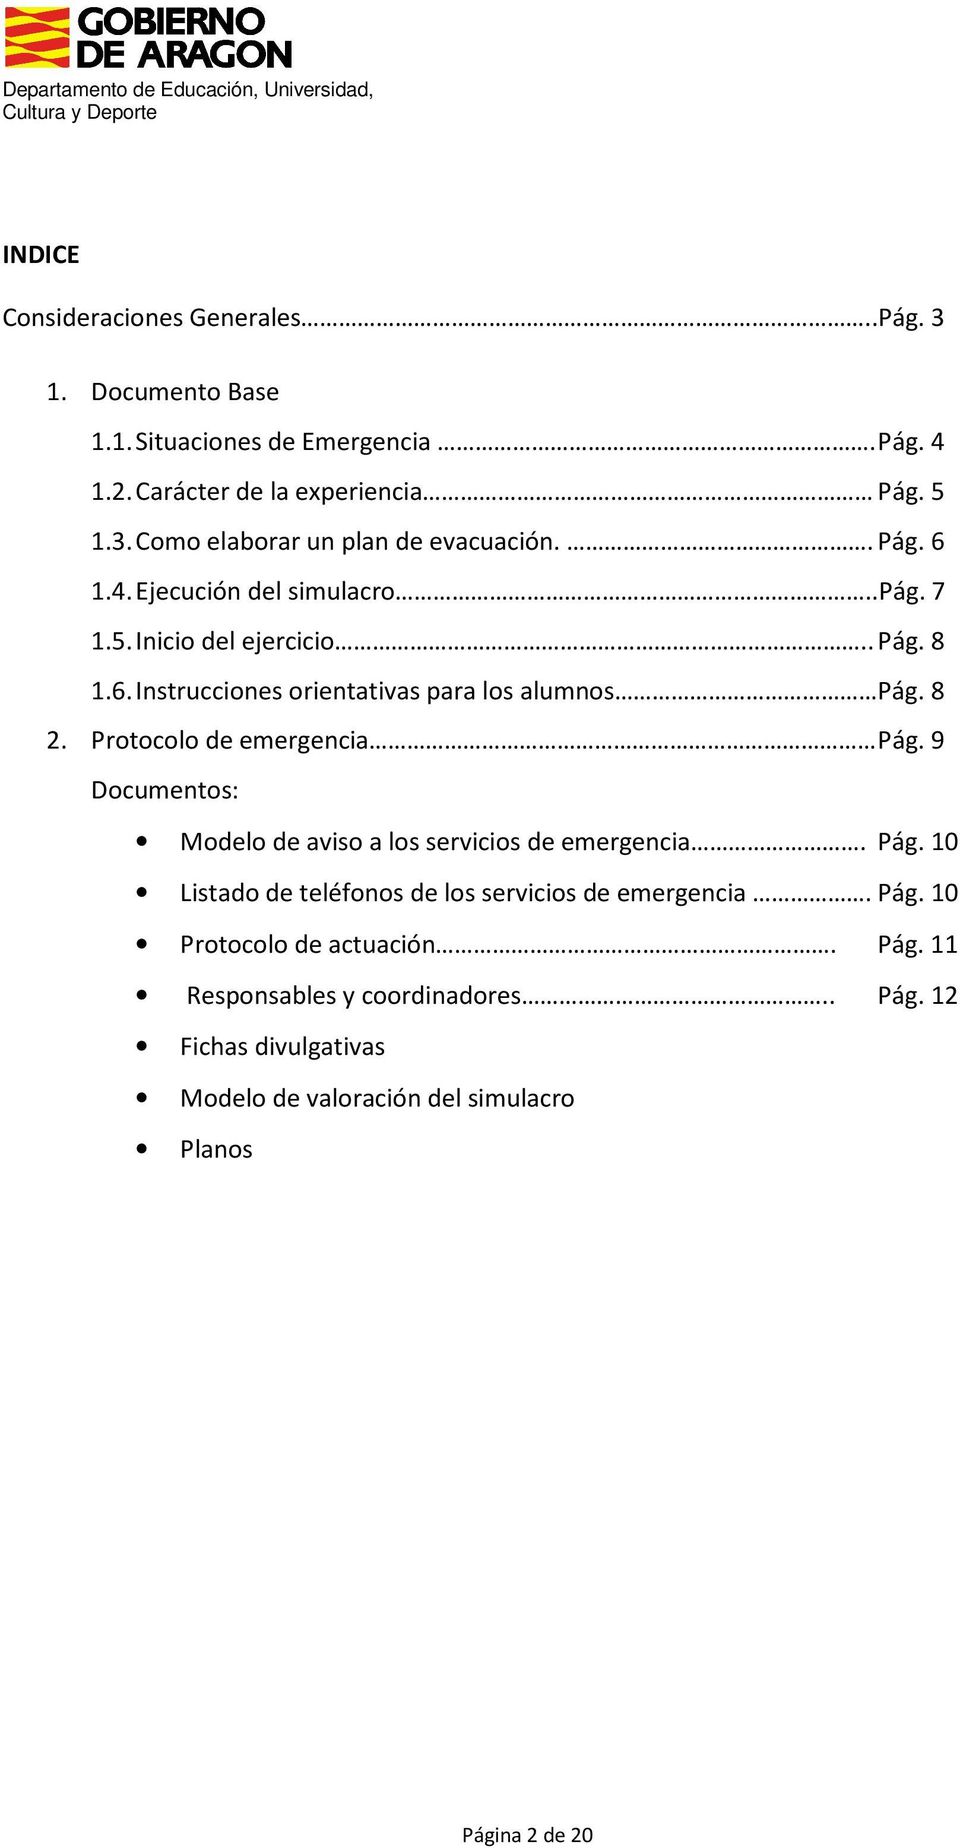 Protocolo de emergencia Pág. 9 Documentos: Modelo de aviso a los servicios de emergencia. Pág. 10 Listado de teléfonos de los servicios de emergencia. Pág. 10 Protocolo de actuación.